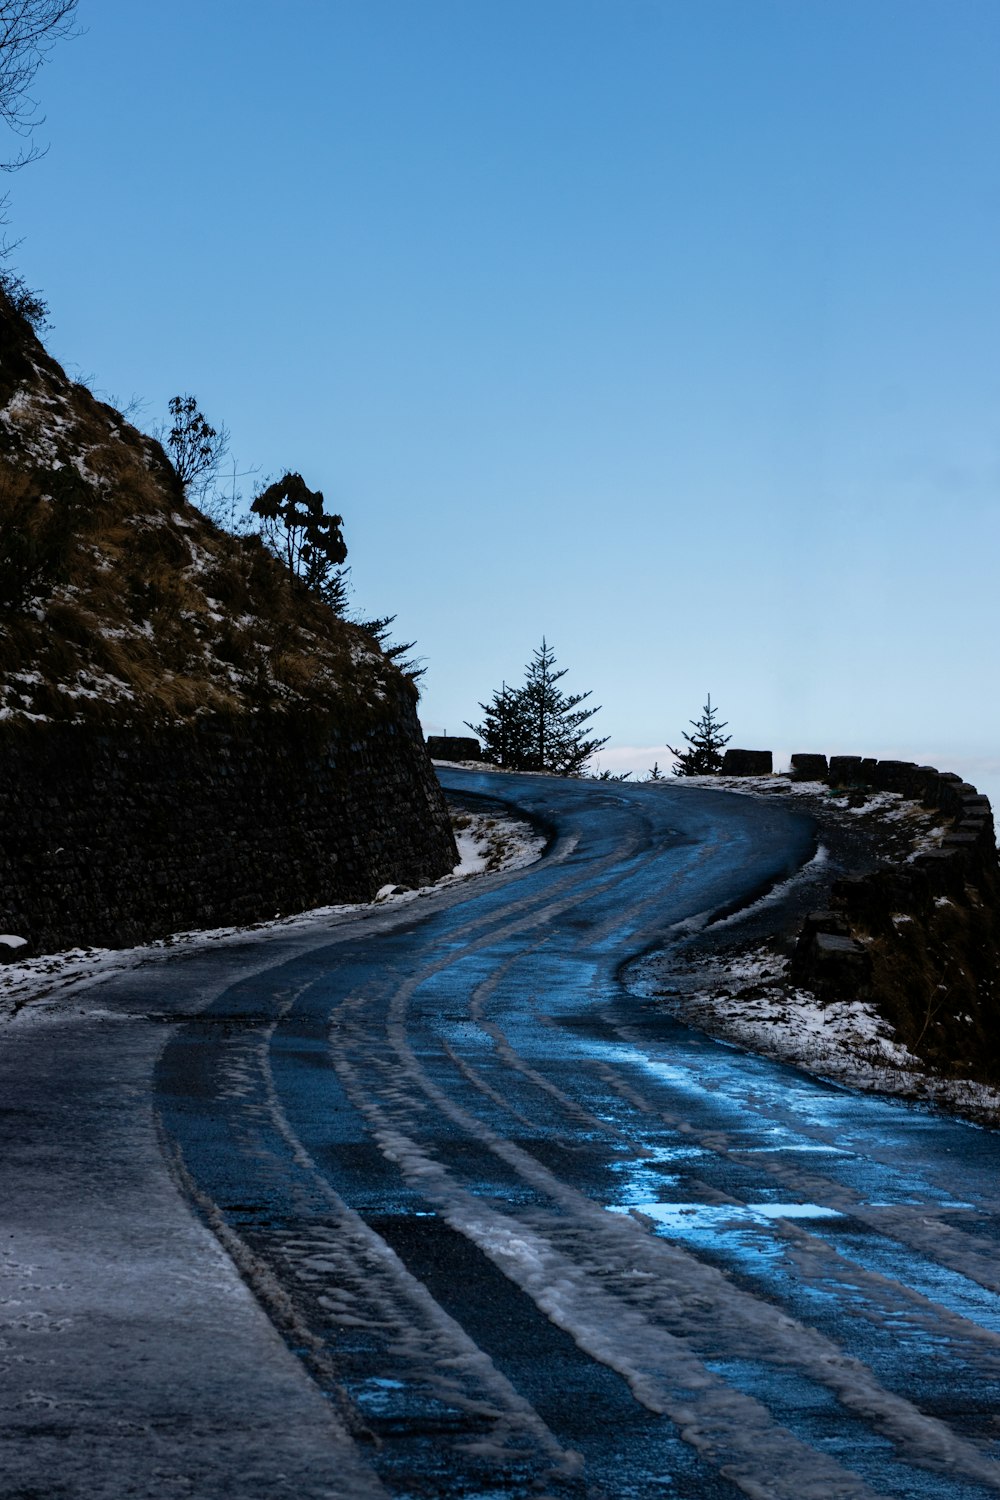 Un camino sinuoso con nieve y hielo en el suelo